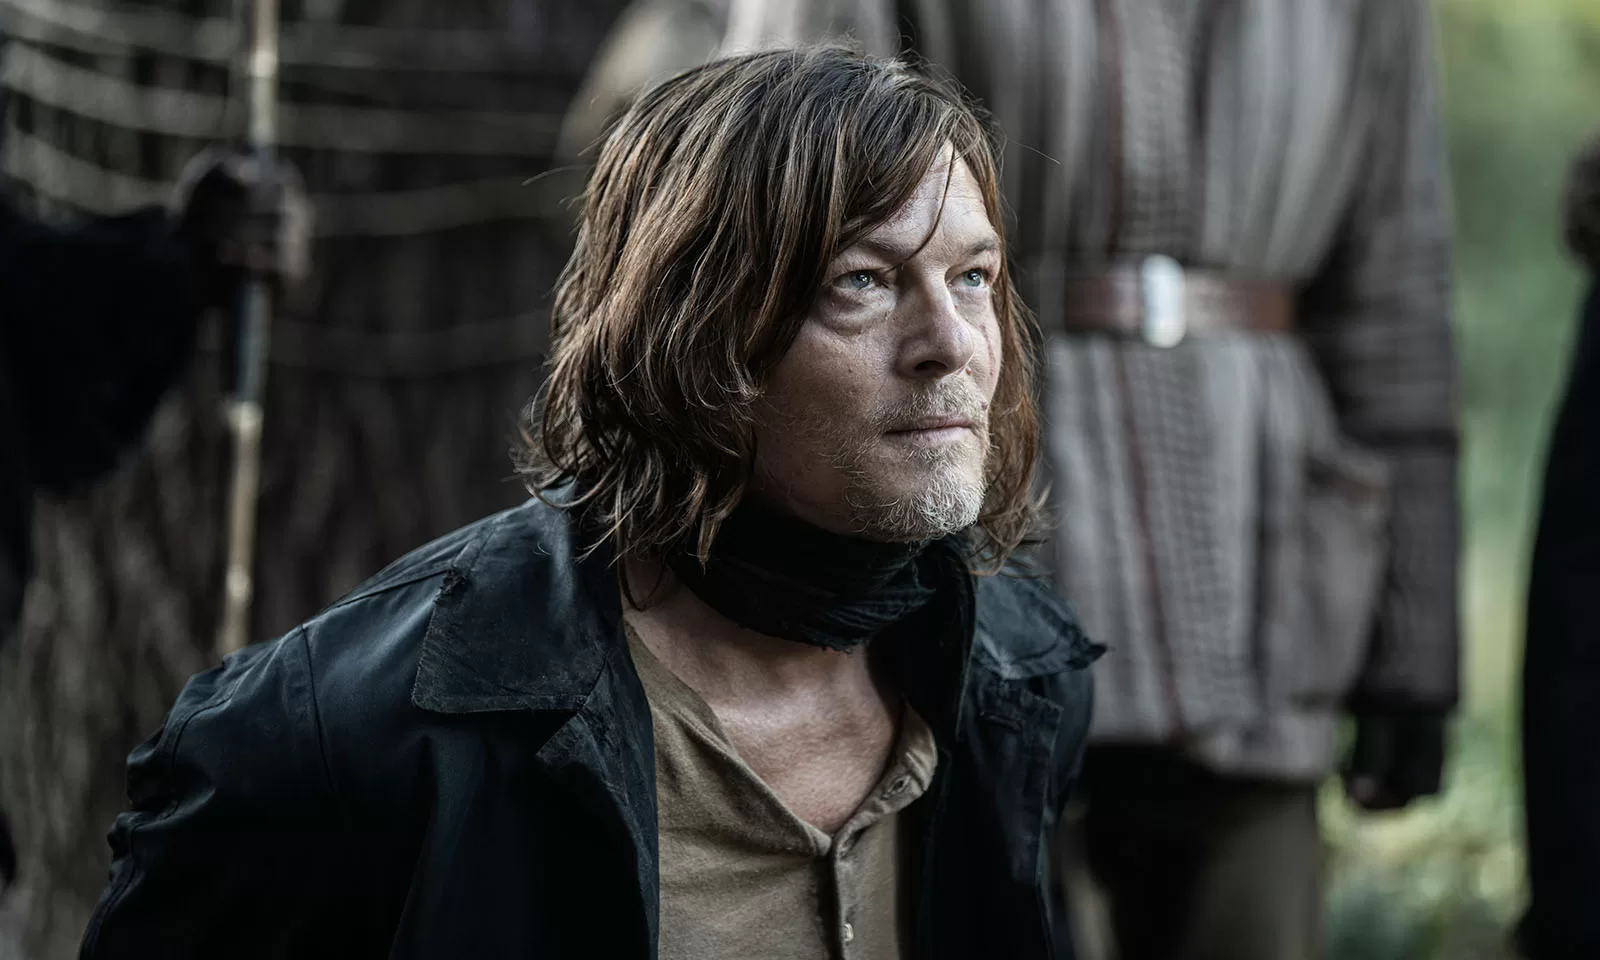 Daryl ajoelhado feito de refém em cena do episódio 1 da 1ª temporada de The Walking Dead: Daryl Dixon.